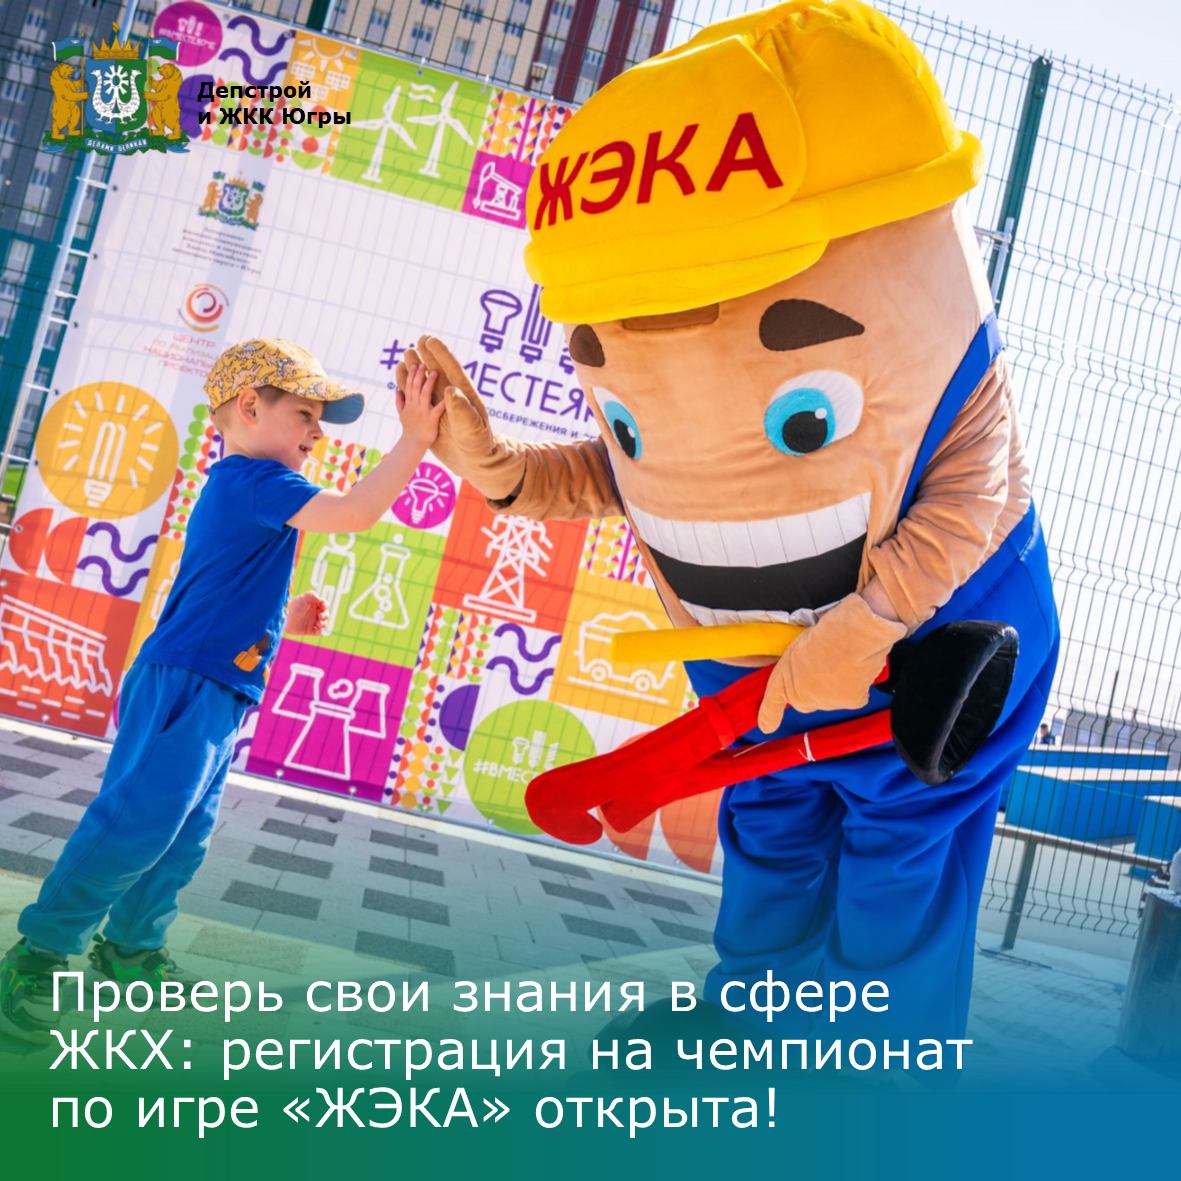 Проверь свои знания в сфере ЖКХ: регистрация на Всероссийский чемпионат по игре «ЖЭКА» открыта!